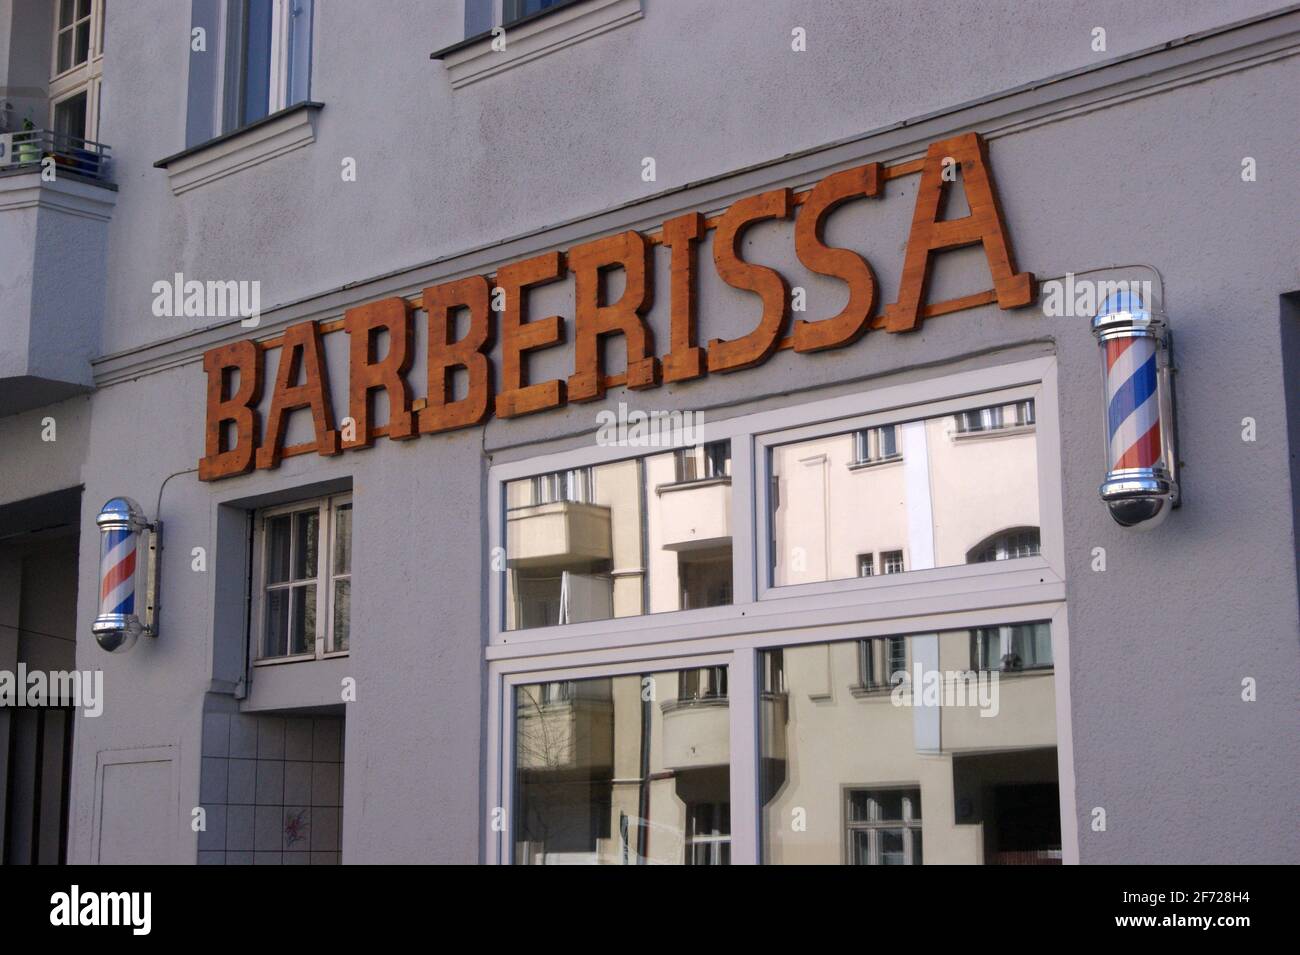 Barberissa: Ein Barbershop am Brunsbütteler Damm en Berlín-Spandau. Foto de stock